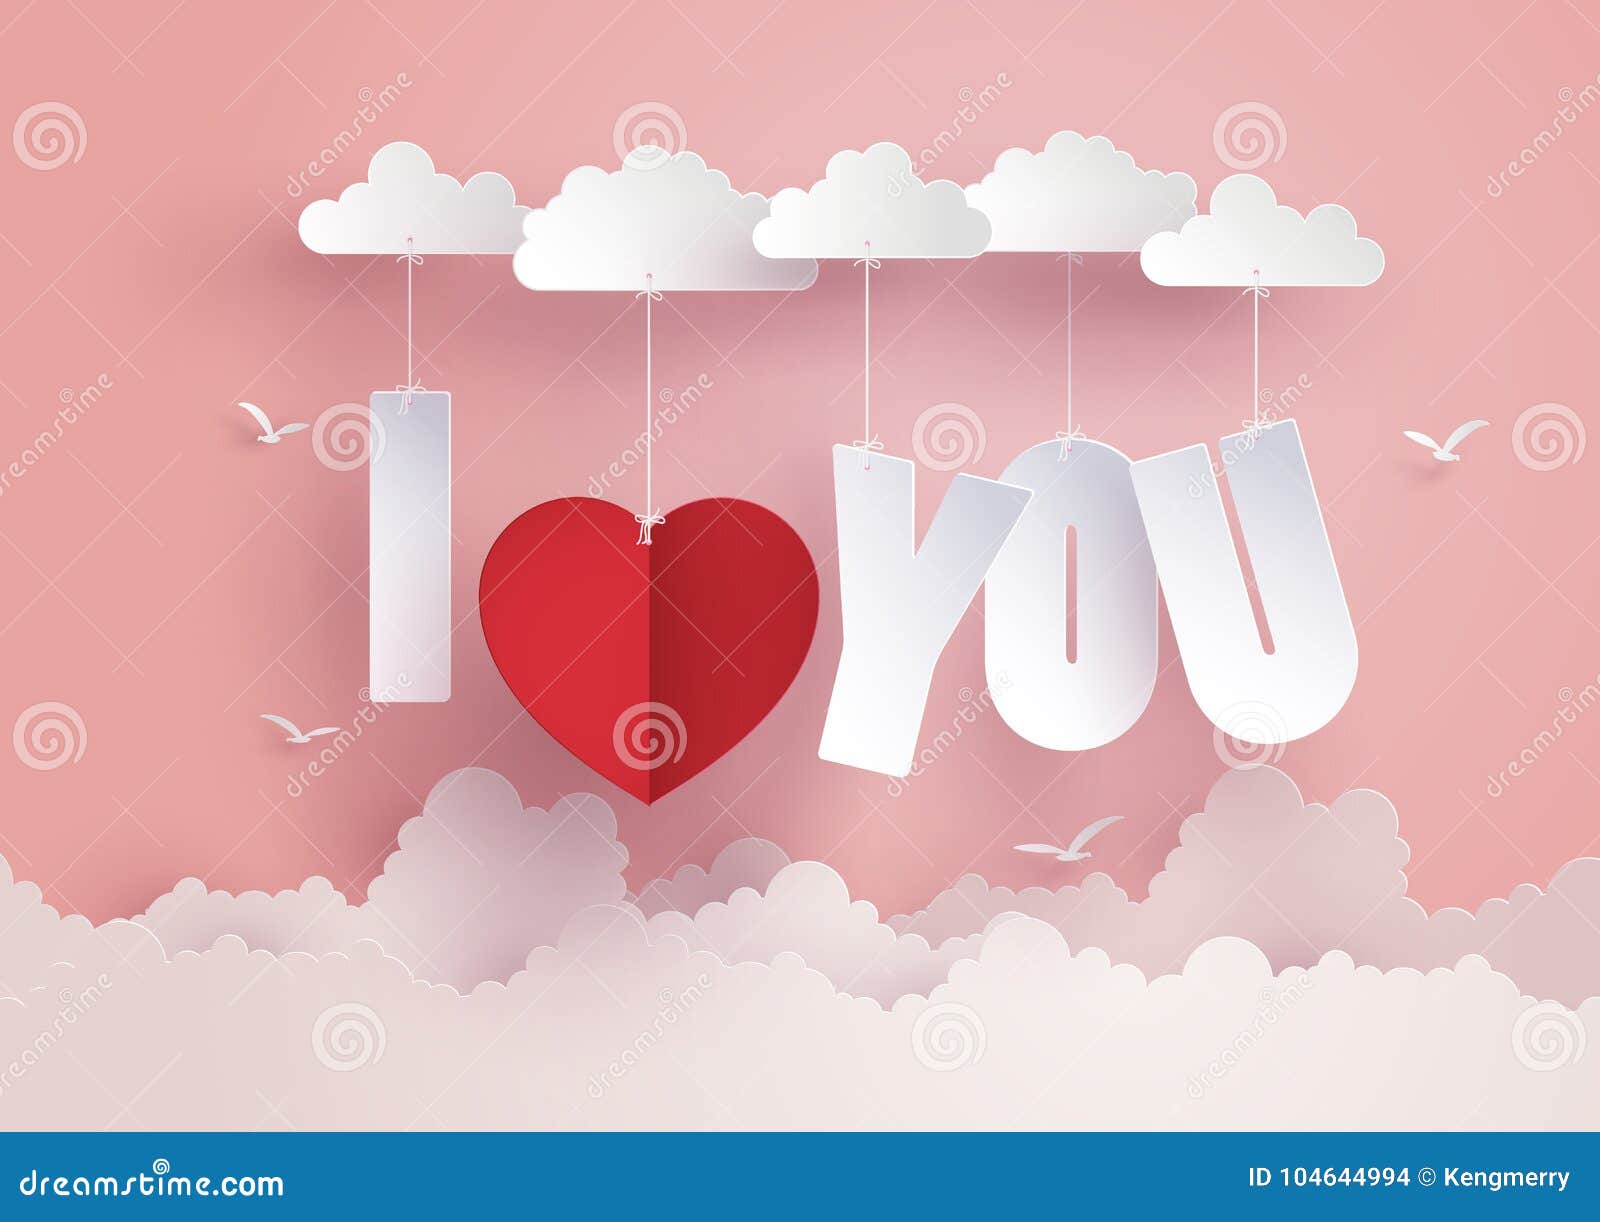 Conceito Do Amor E Dia De São Valentim, Cair Da Mensagem No Céu Ilustração  do Vetor - Ilustração de decorativo, valentina: 104644994